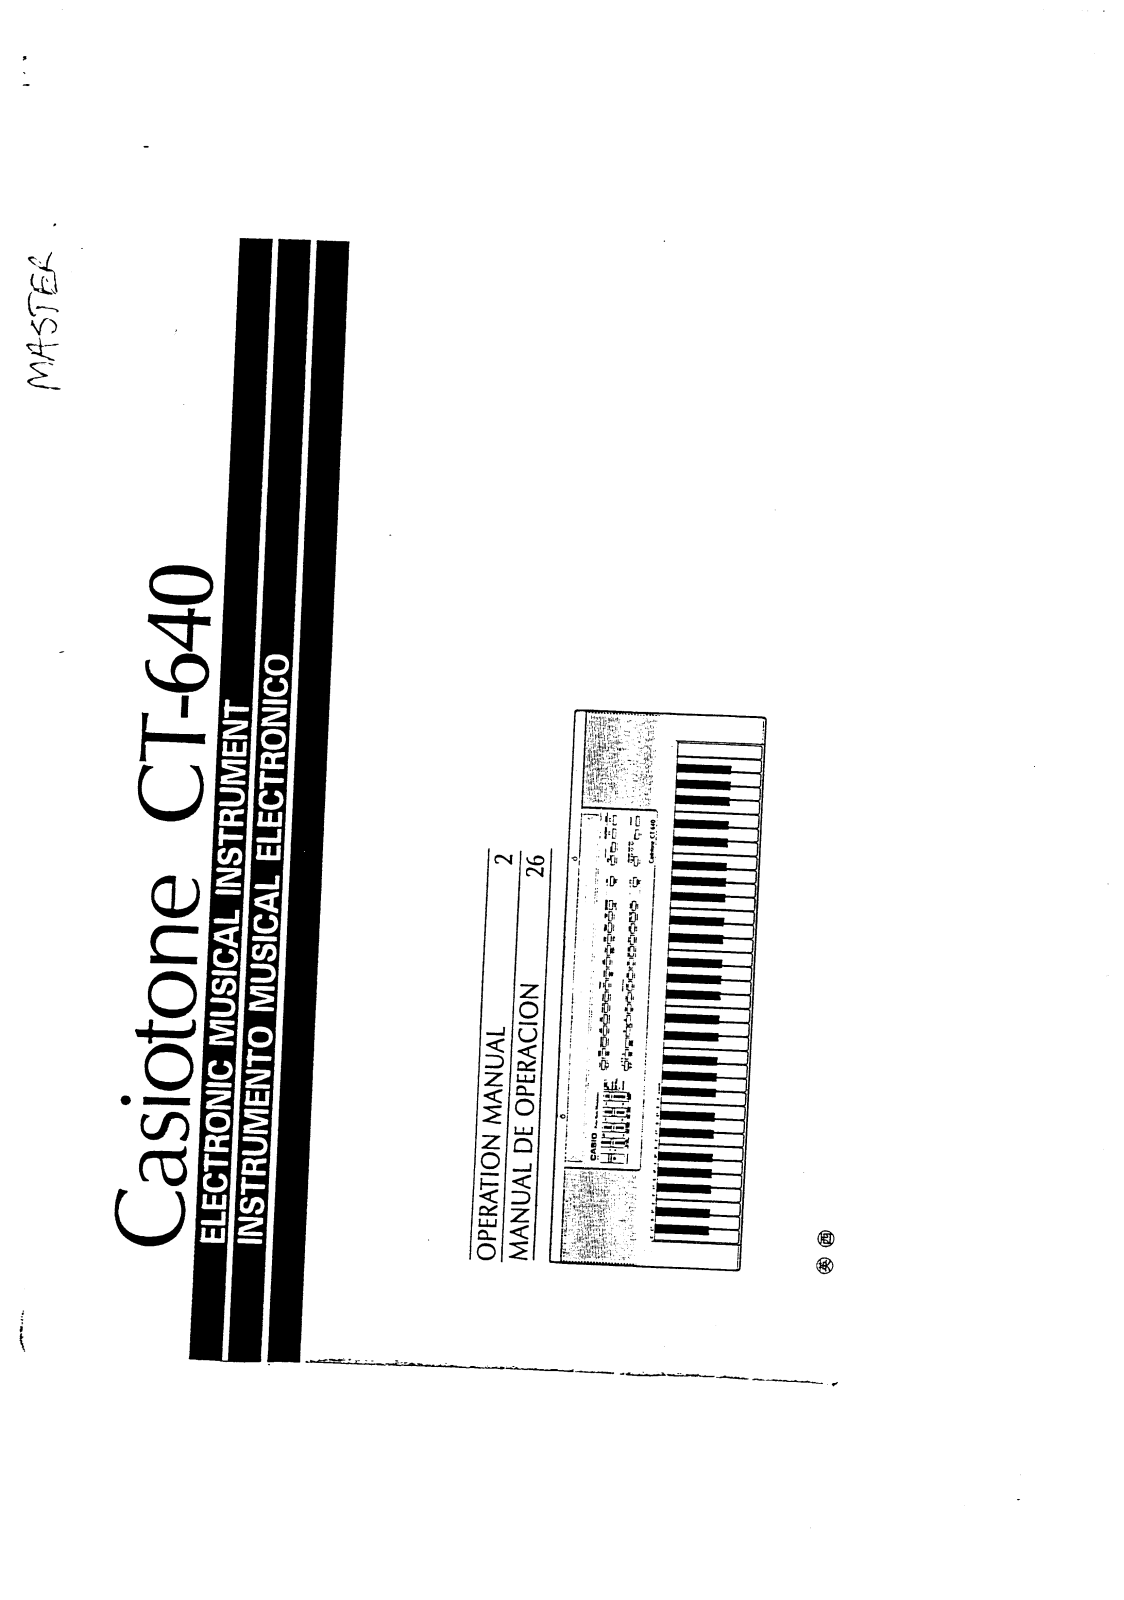 Casio CT-640 User Manual